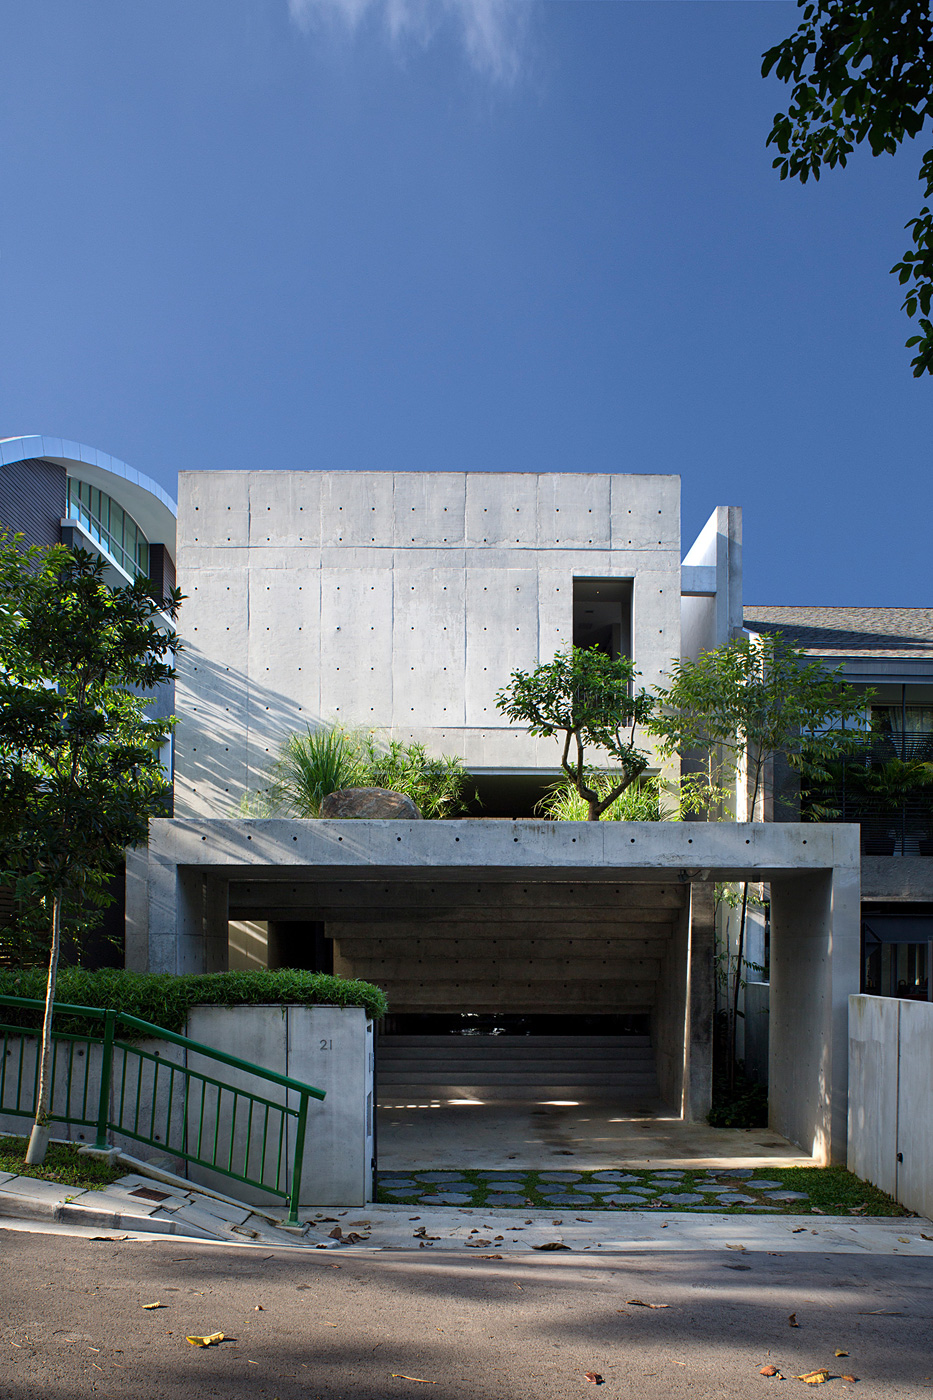 Первое место в категории «Вилла». Здание Namly House, построенное в Сингапуре архитектором Альбертом Лимом и проектным бюро Chang Architects. Авторам было заказано здание из железобетона с верандой, на которой можно было бы отдыхать и любоваться природой.